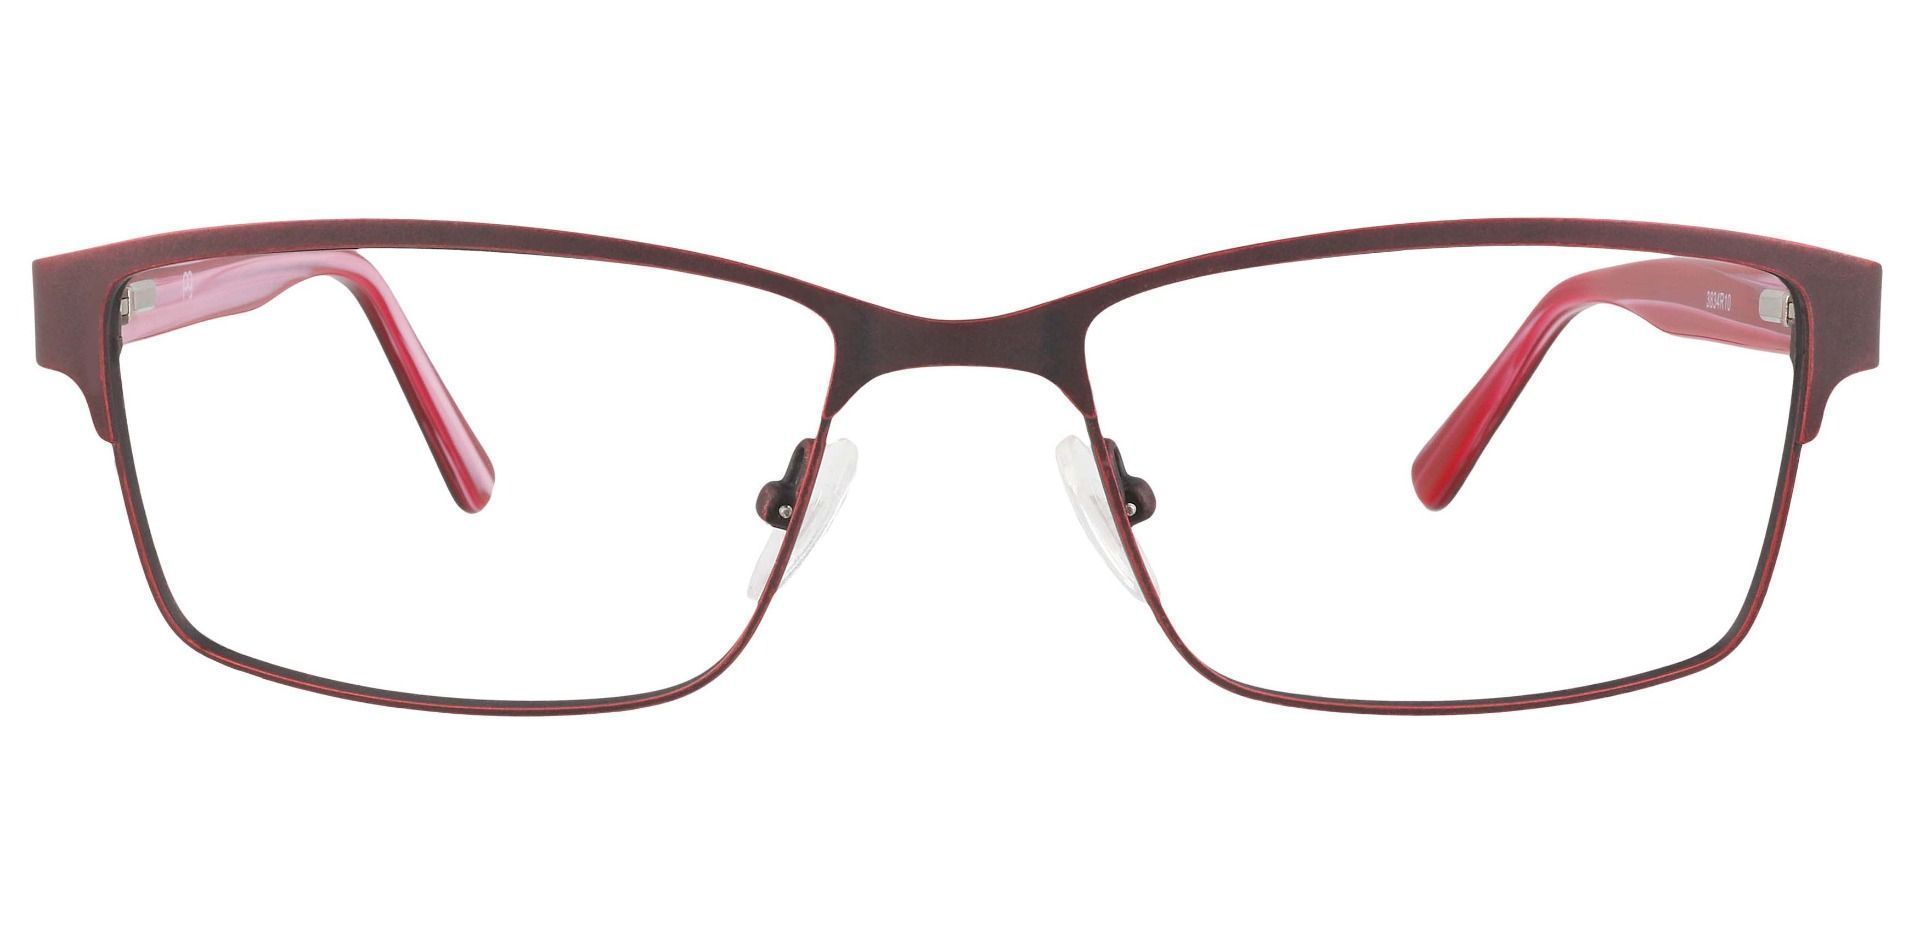 Bishop Rectangle Lined Bifocal Glasses - Red | Men's Eyeglasses | Payne ...